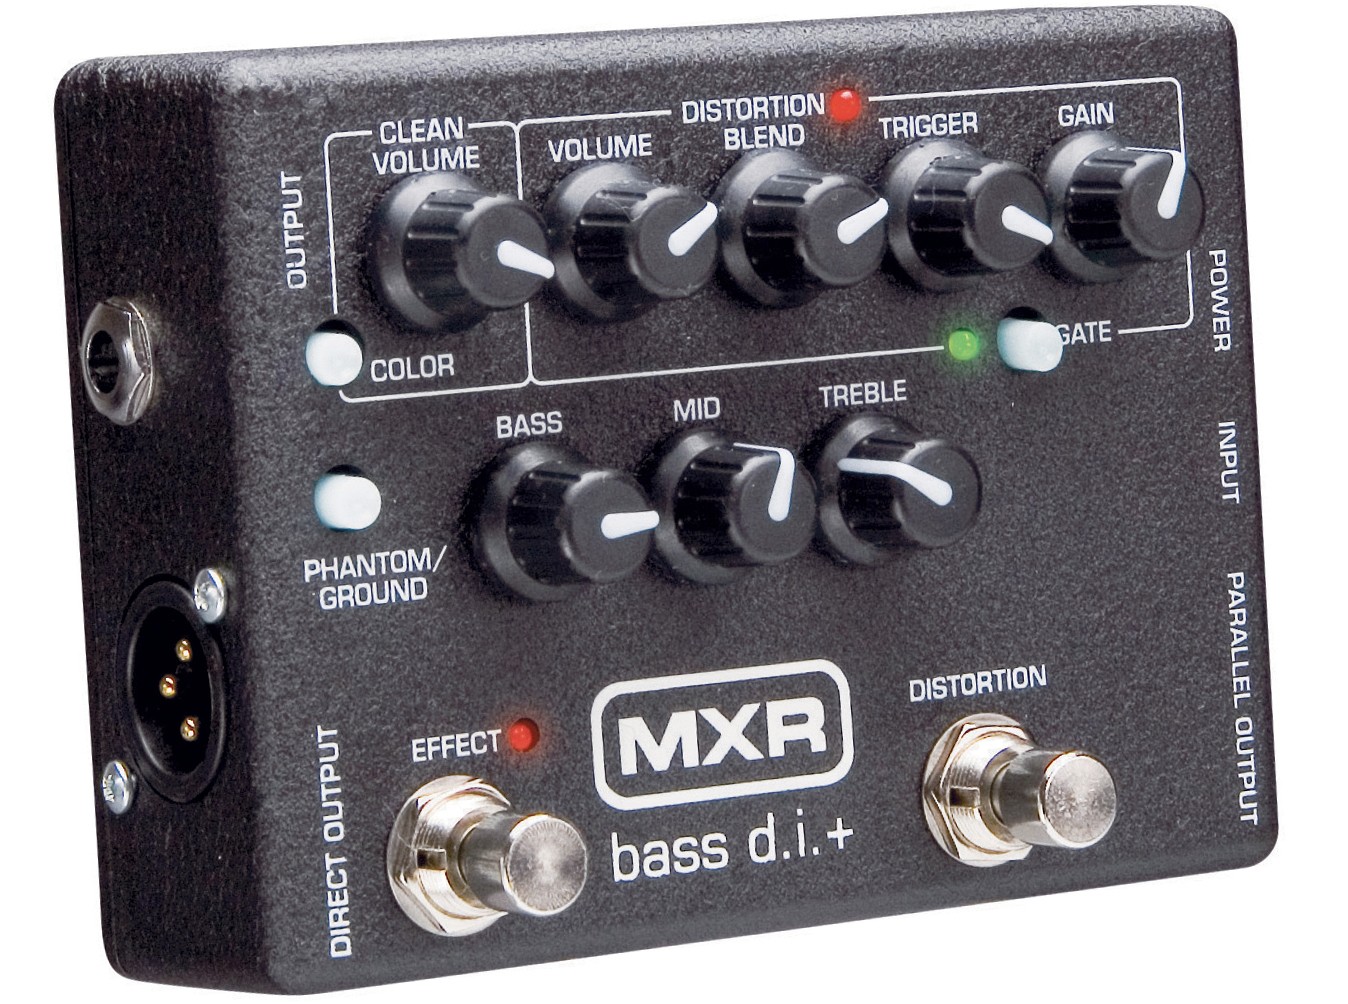 Dunlop MXR M80 Bass DI+